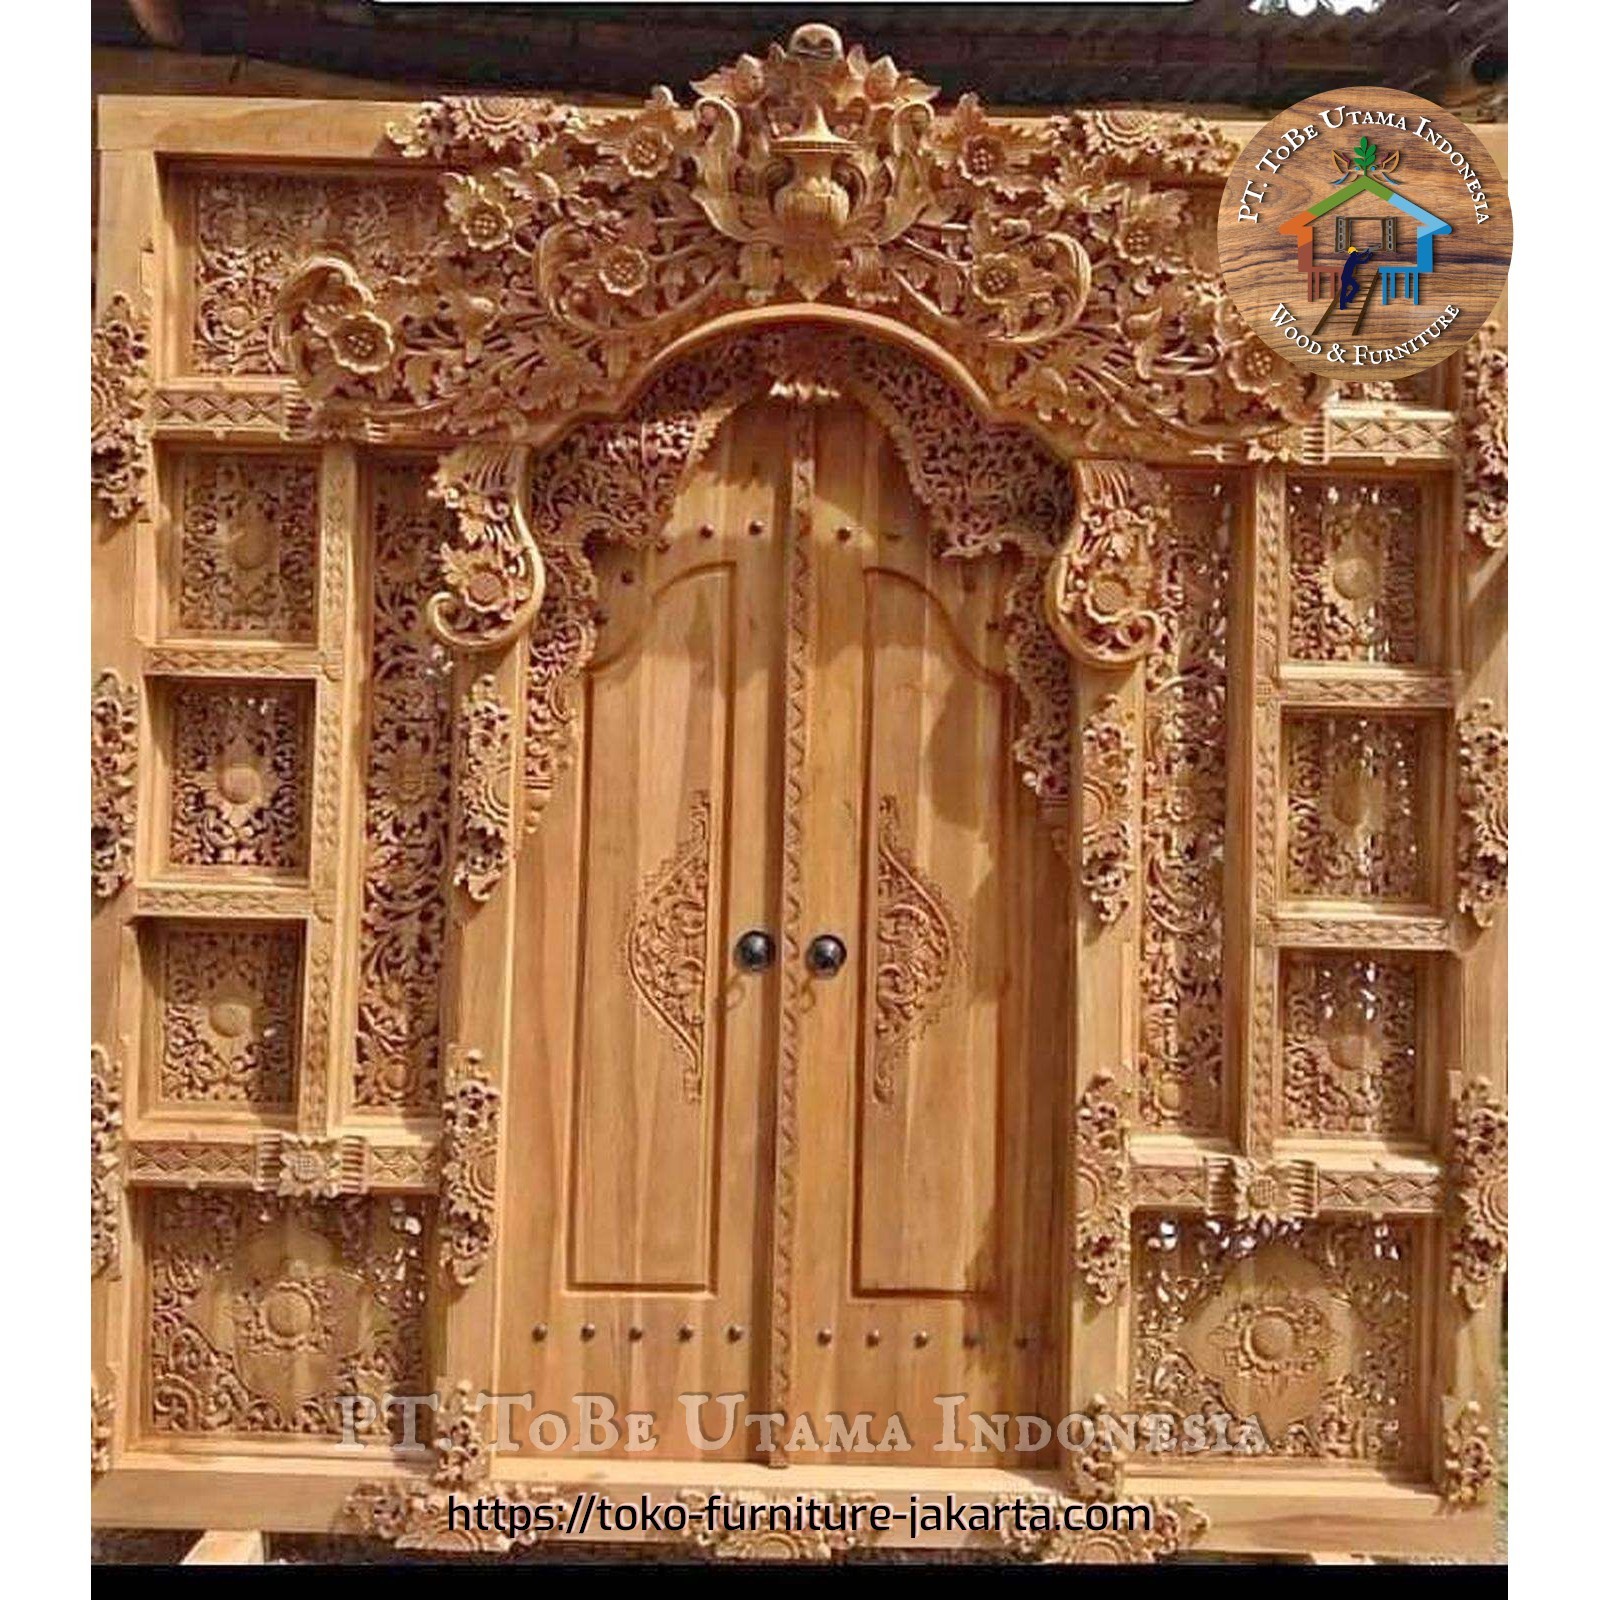 Doors: Bali Gebyok 02 made of teakwood (image 1 of 1).